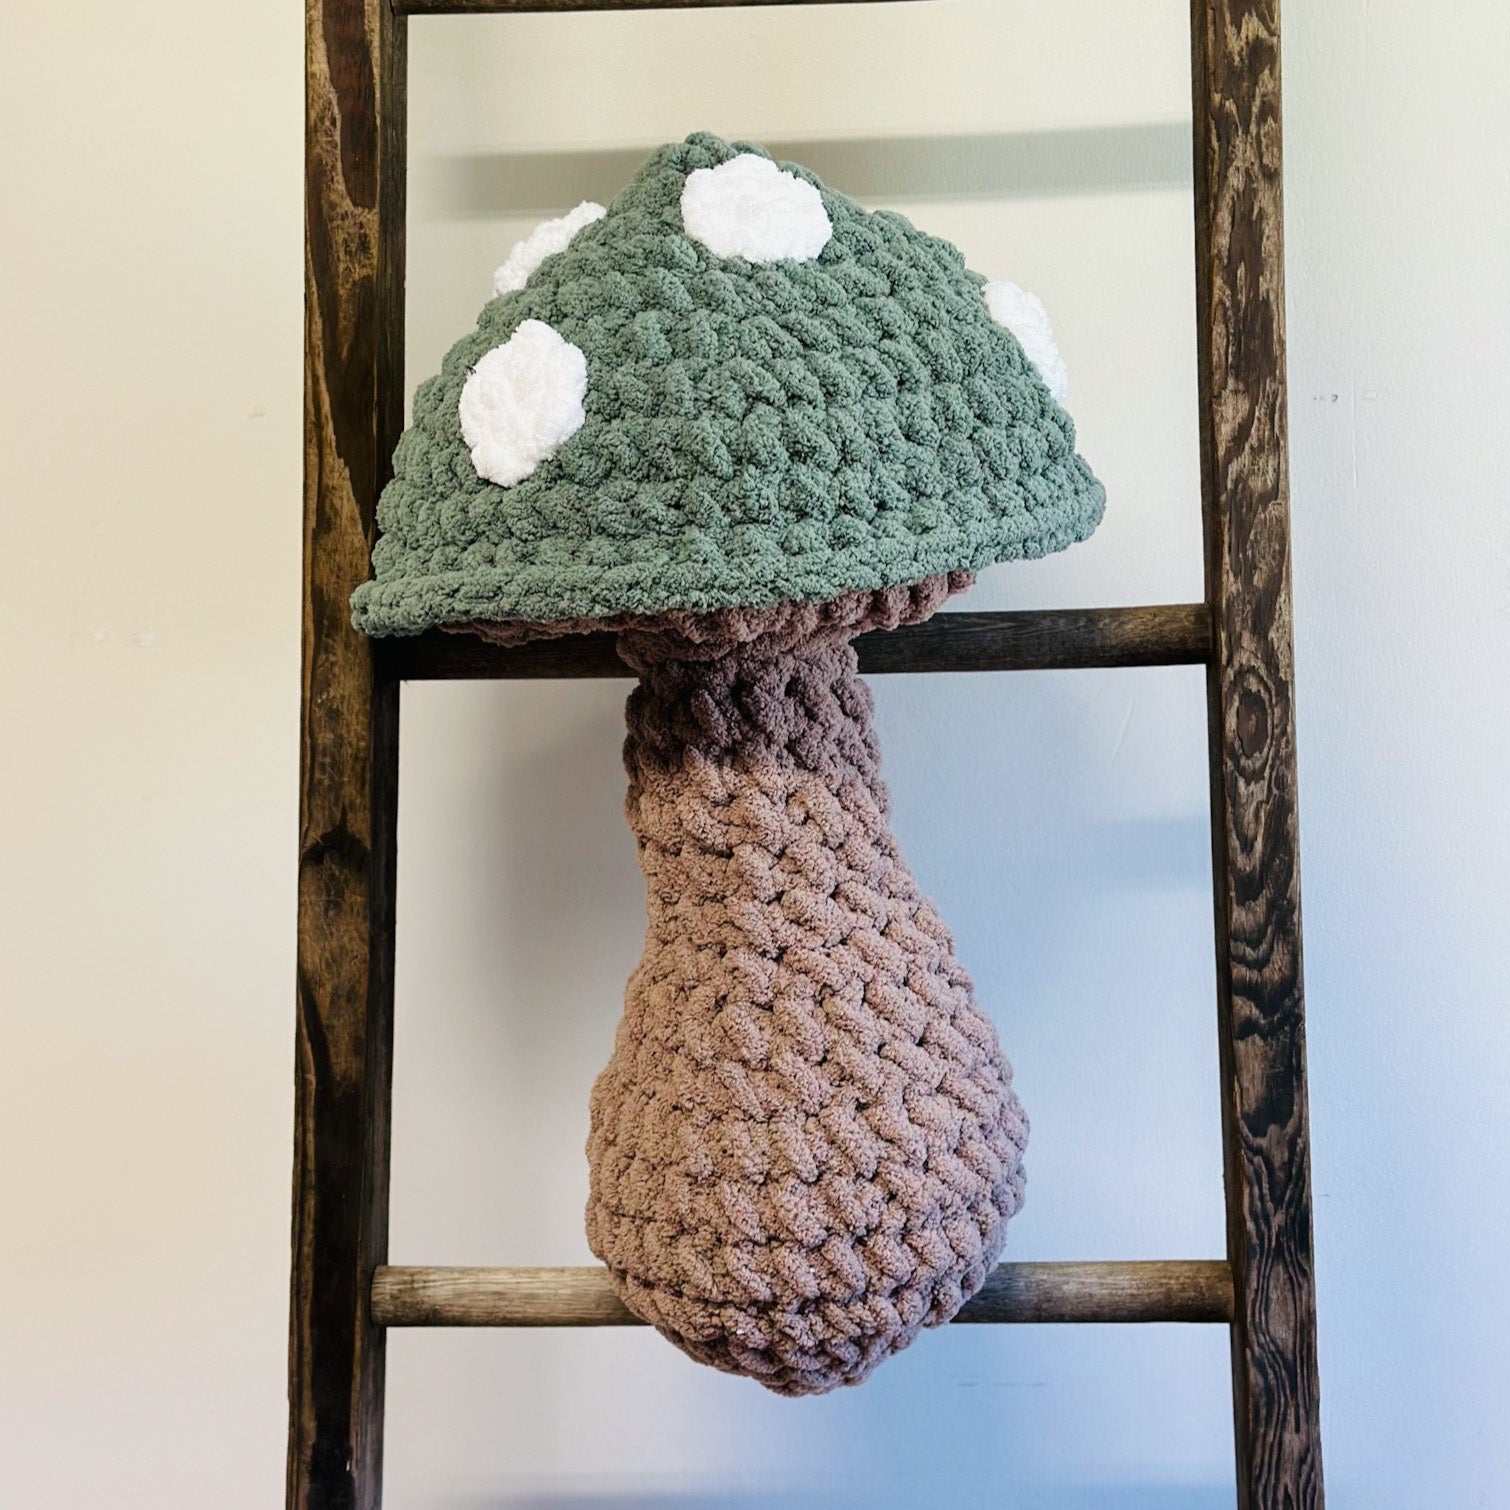 Giant Mushroom Pillow Crochet: Crochet pattern